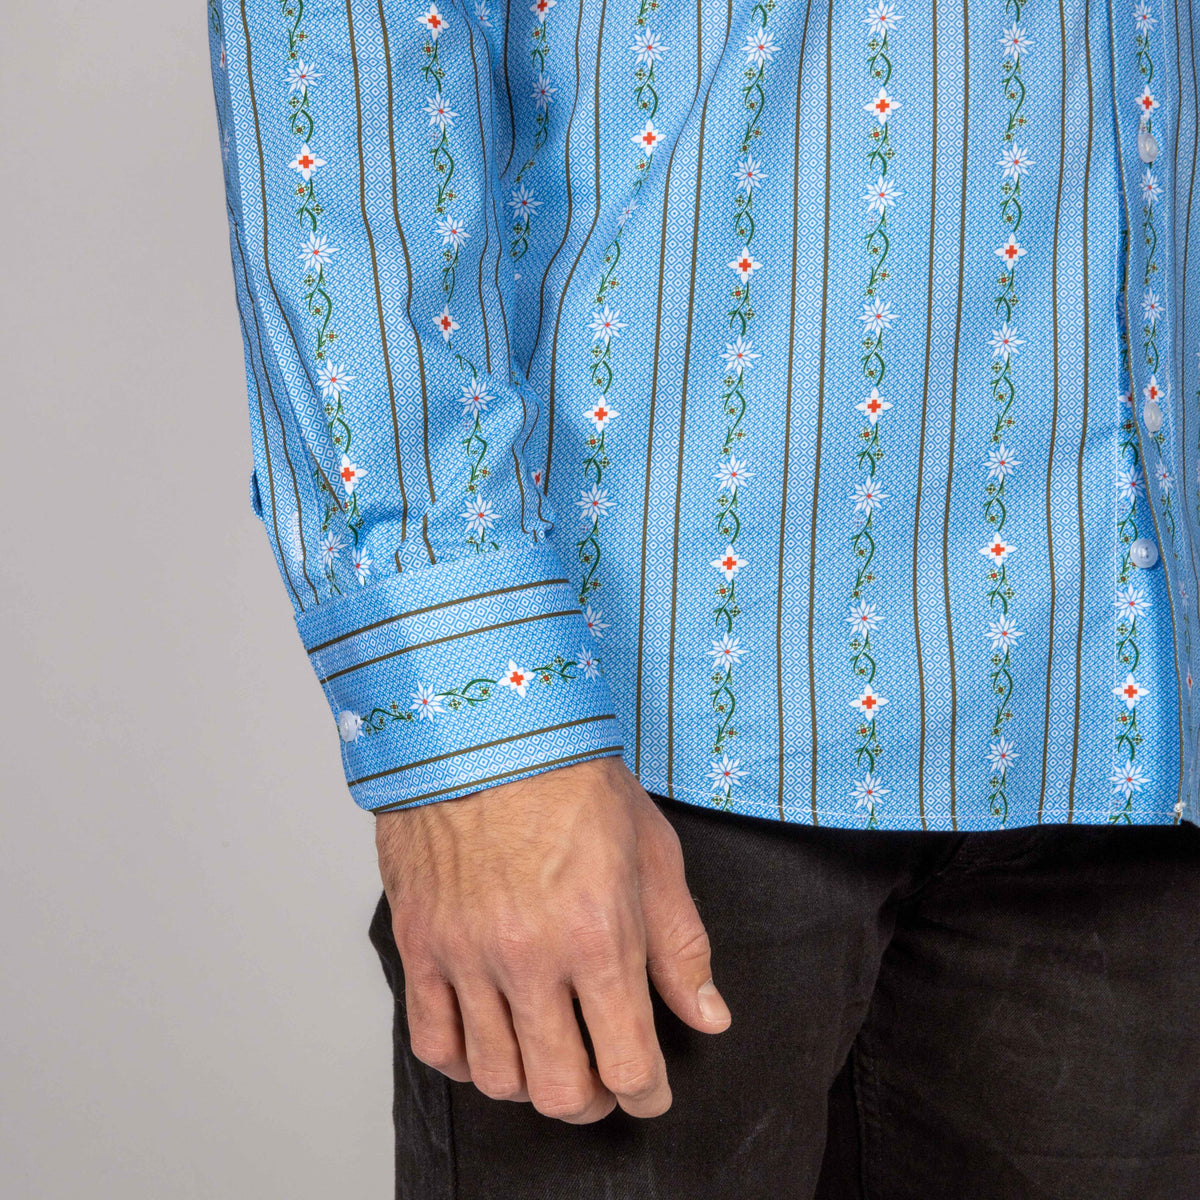 Herren Edelweiss Hemd von Edelvetica, gekennzeichnet durch ein traditionelles und zugleich modernes Design. Dieses Hemd ist mit einem charakteristischen Edelweiss-Muster verziert und bietet eine perfekte Mischung aus Schweizer Tradition und zeitgemäßer Eleganz. Ideal für formelle und informelle Anlässe, bei denen stilvolle Kleidung gefragt ist.